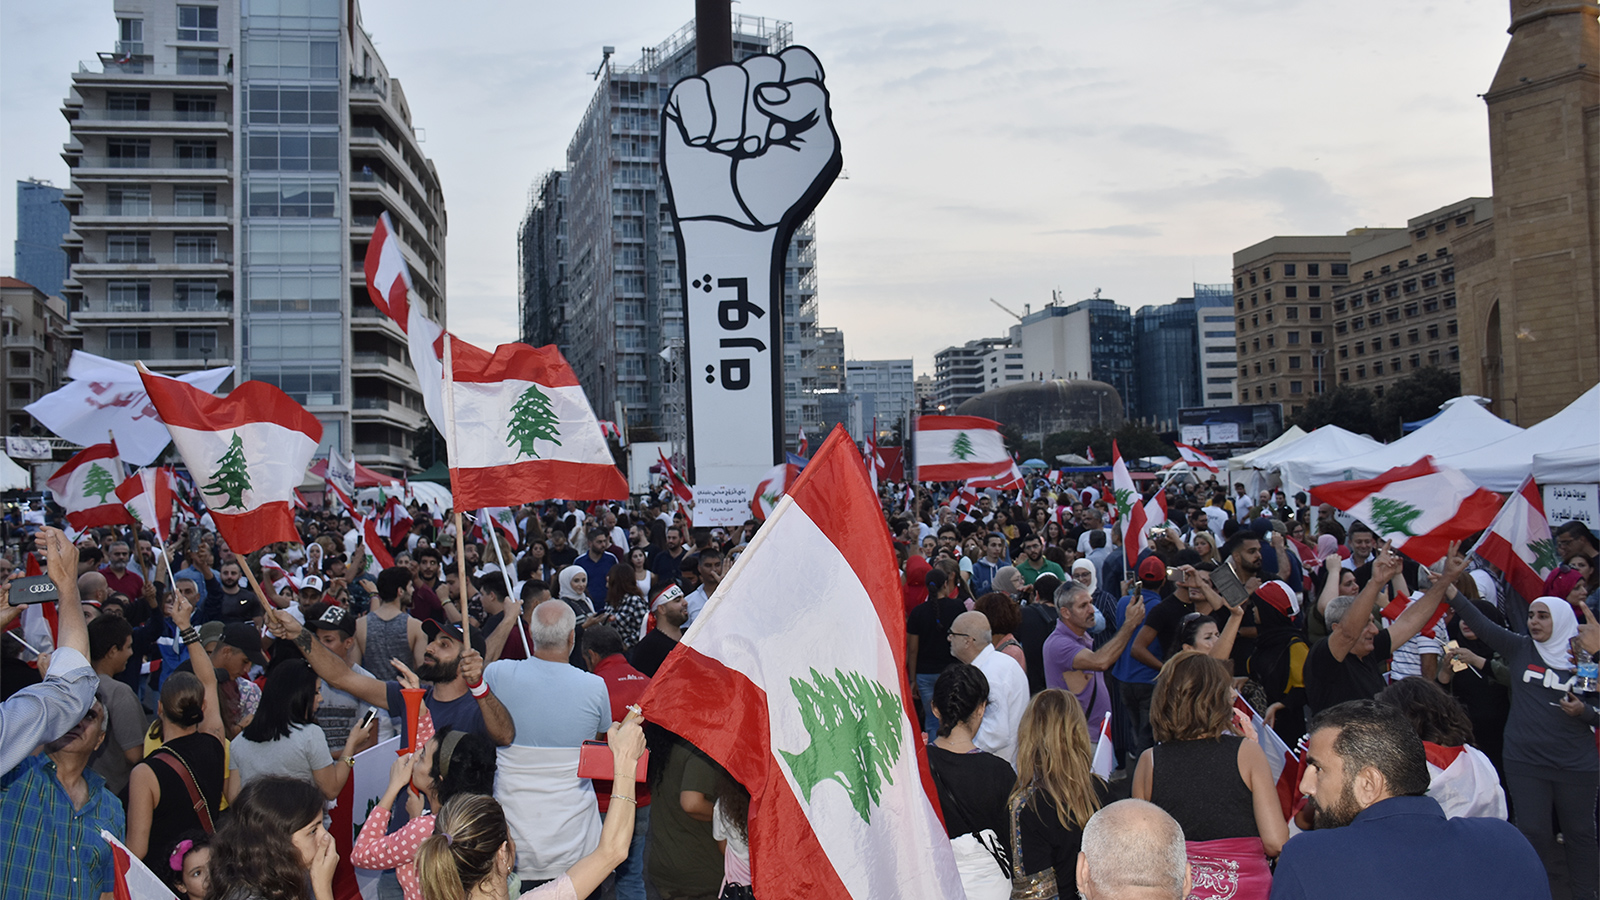 المتظاهرون عادوا إلى ساحات التظاهر المعتادة حاملين الأعلام اللبنانية ومرددين شعاراتهم (الجزيرة)